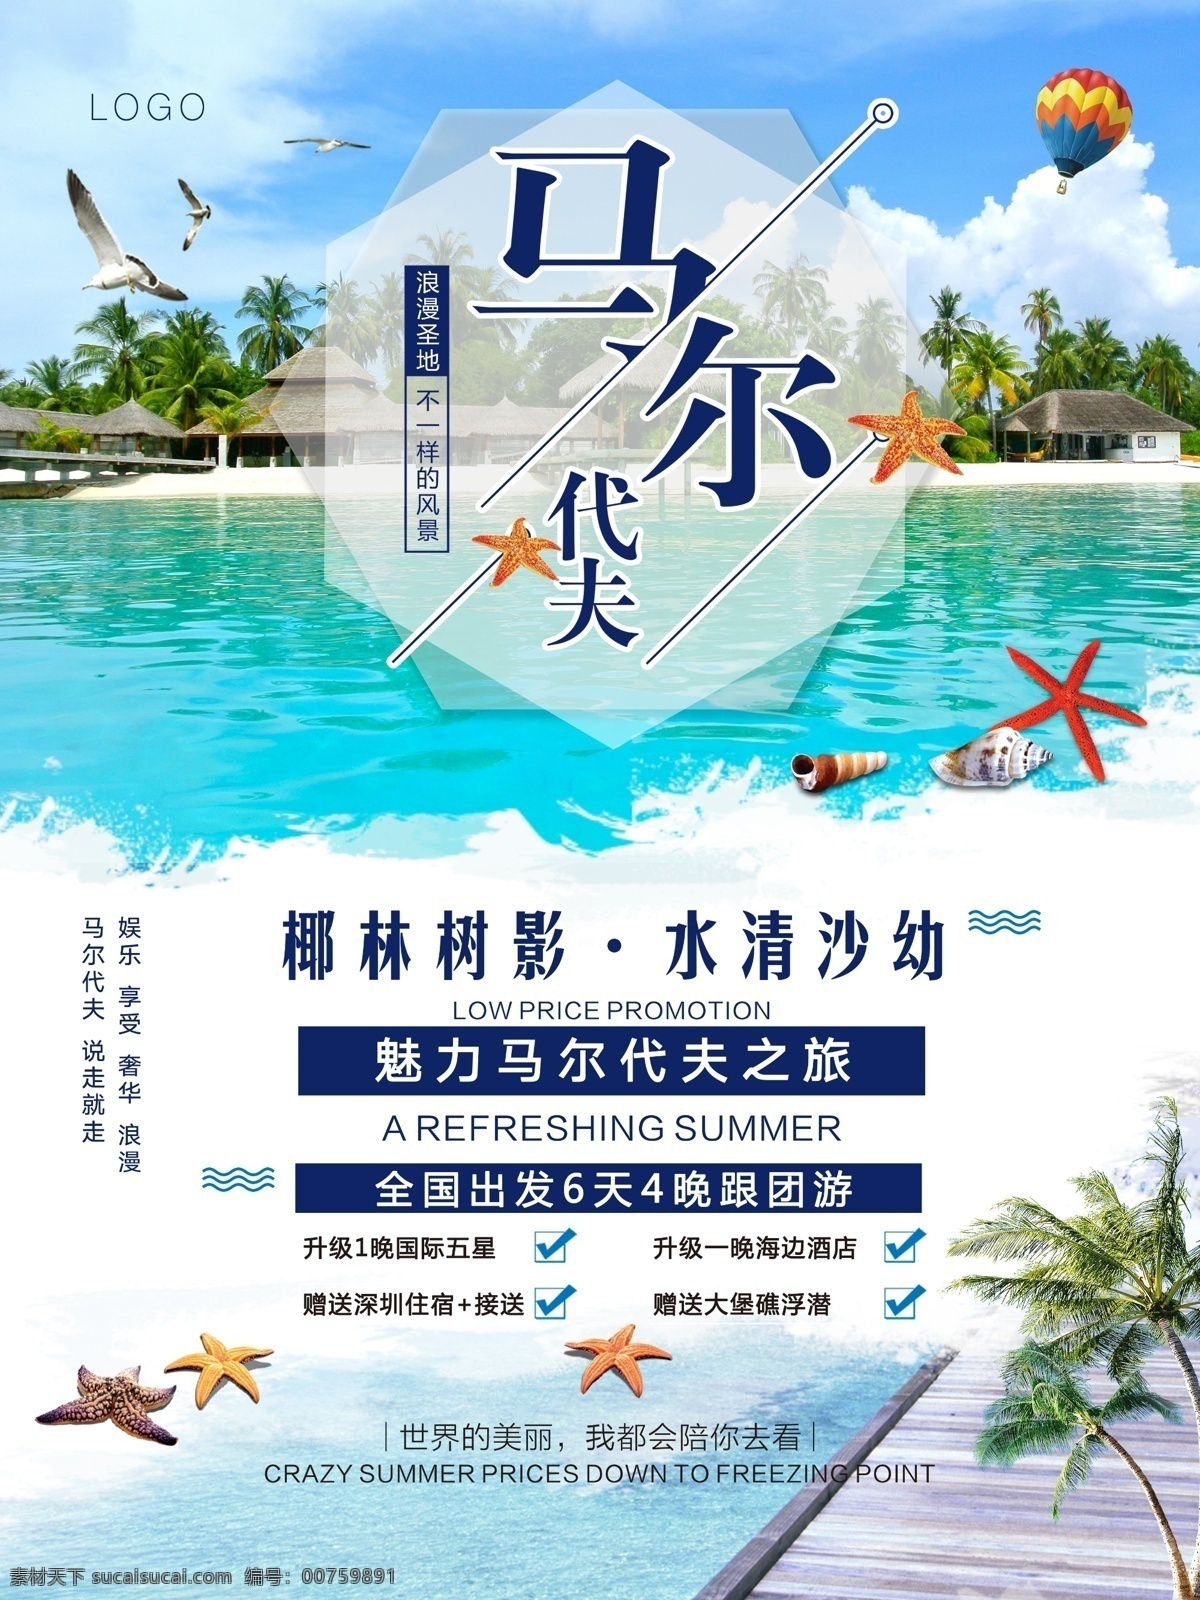 马尔代夫 旅游 海报 促销 旅游海报 促销海报 热气球 派大星 景区 海边 旅游胜地 海景 蓝色